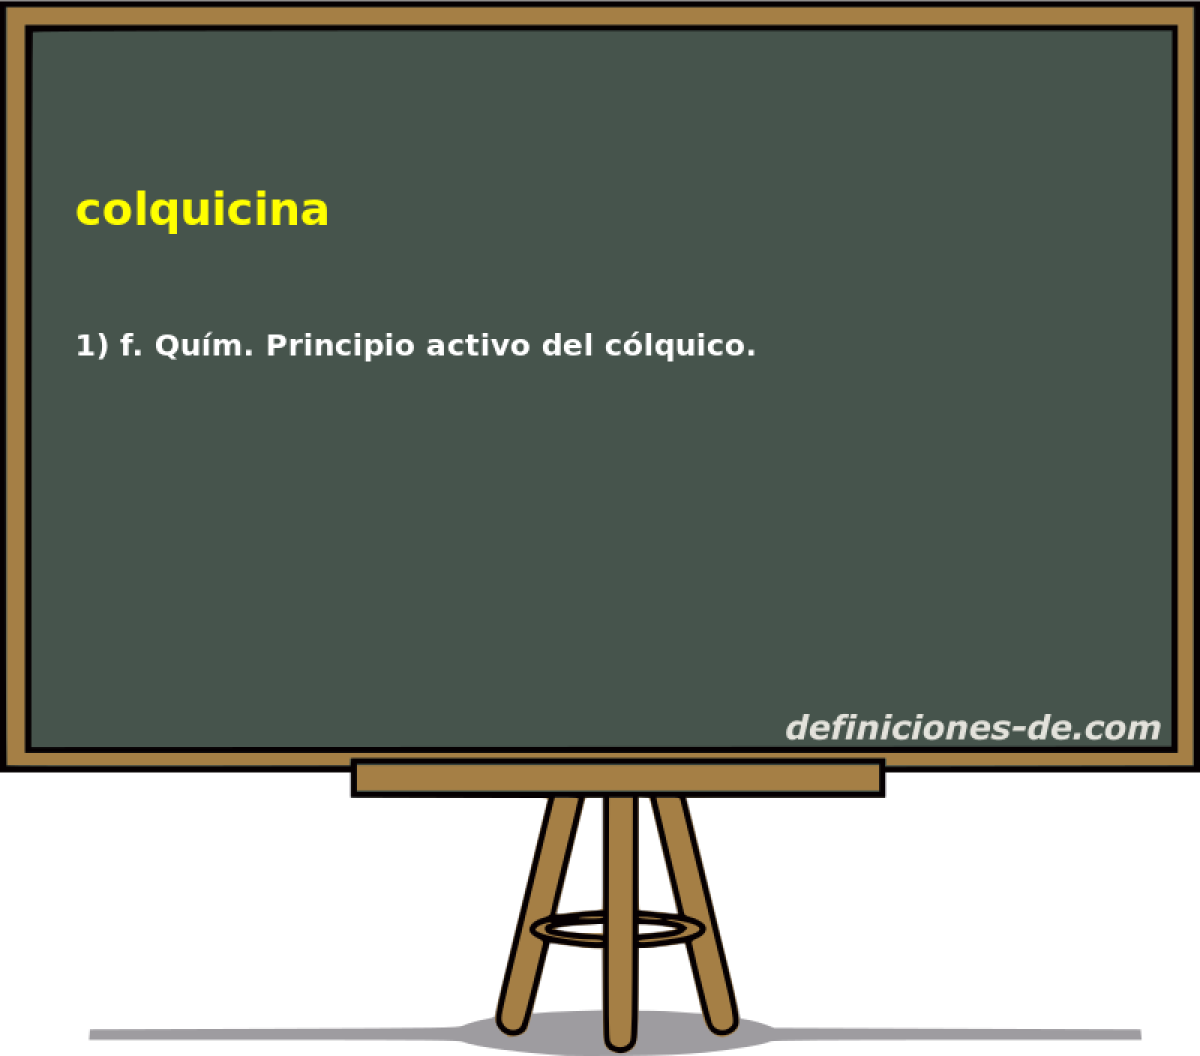 colquicina 